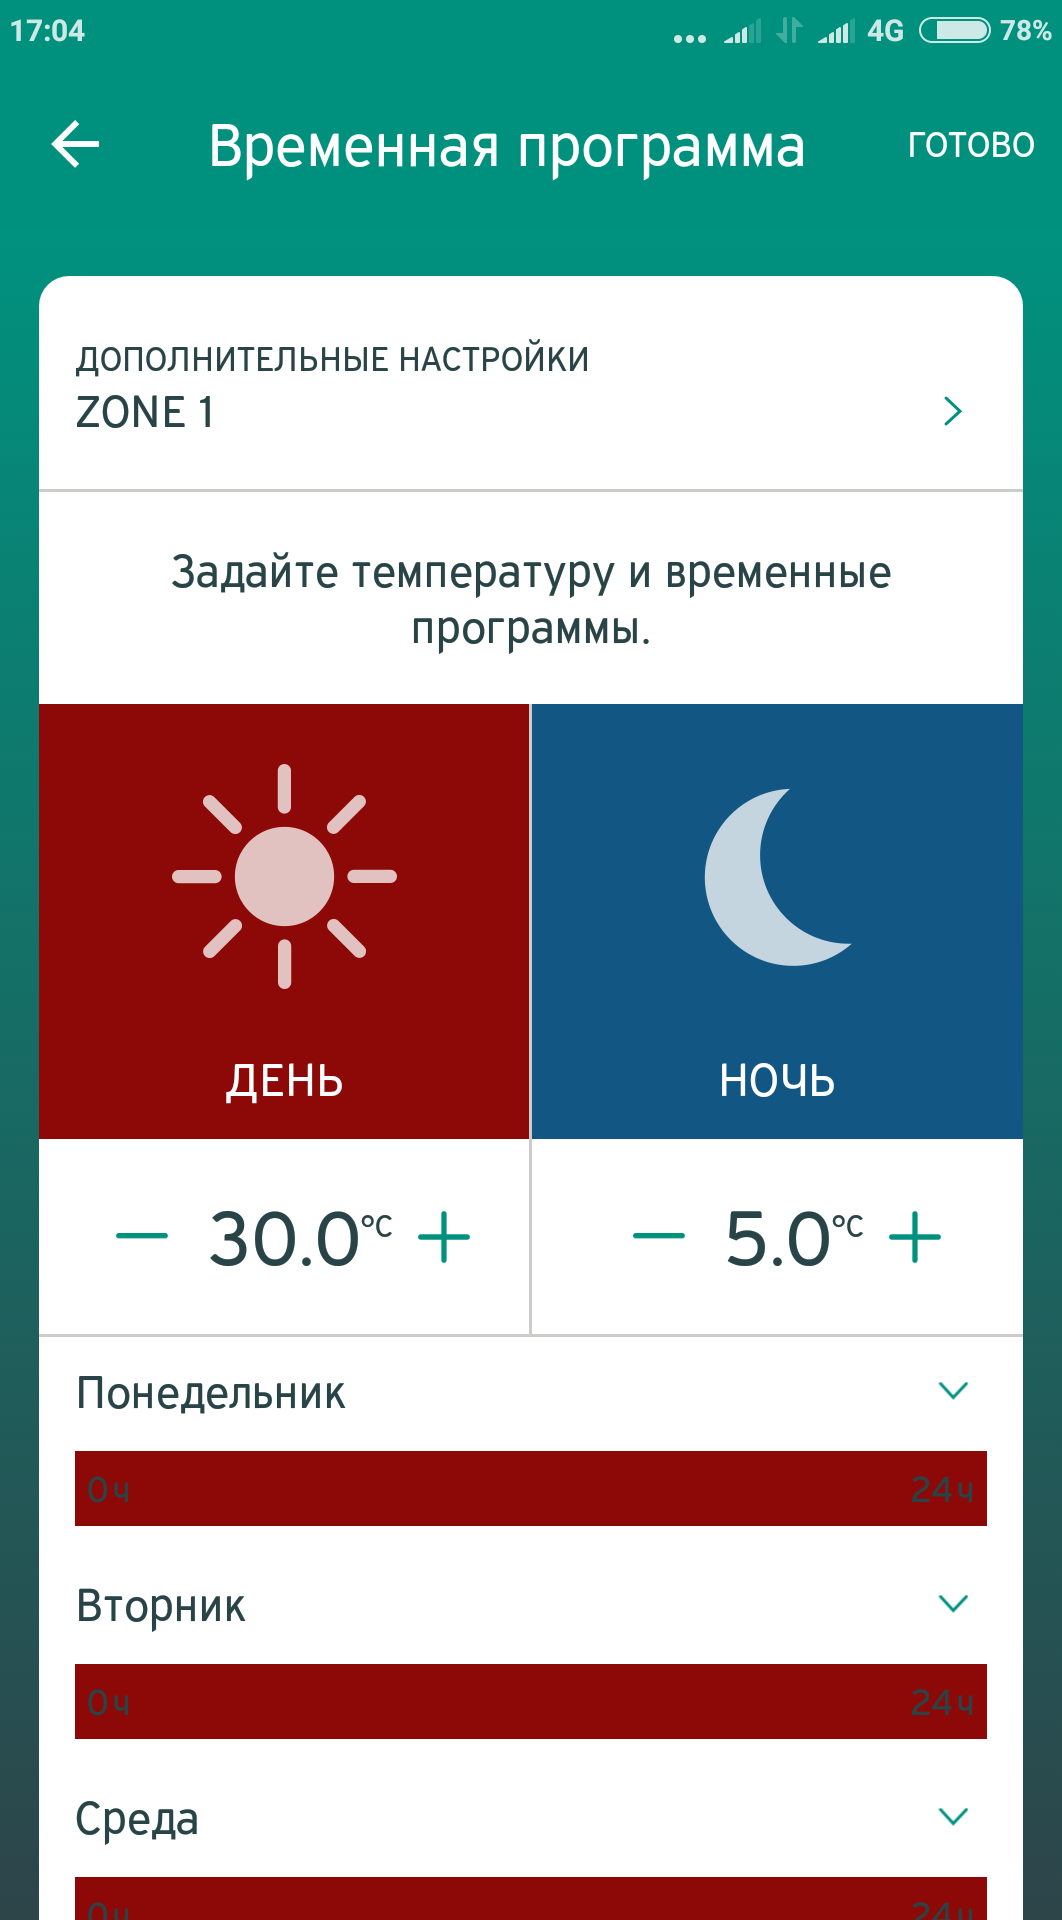 Температурные настройки временной программы multimatic App